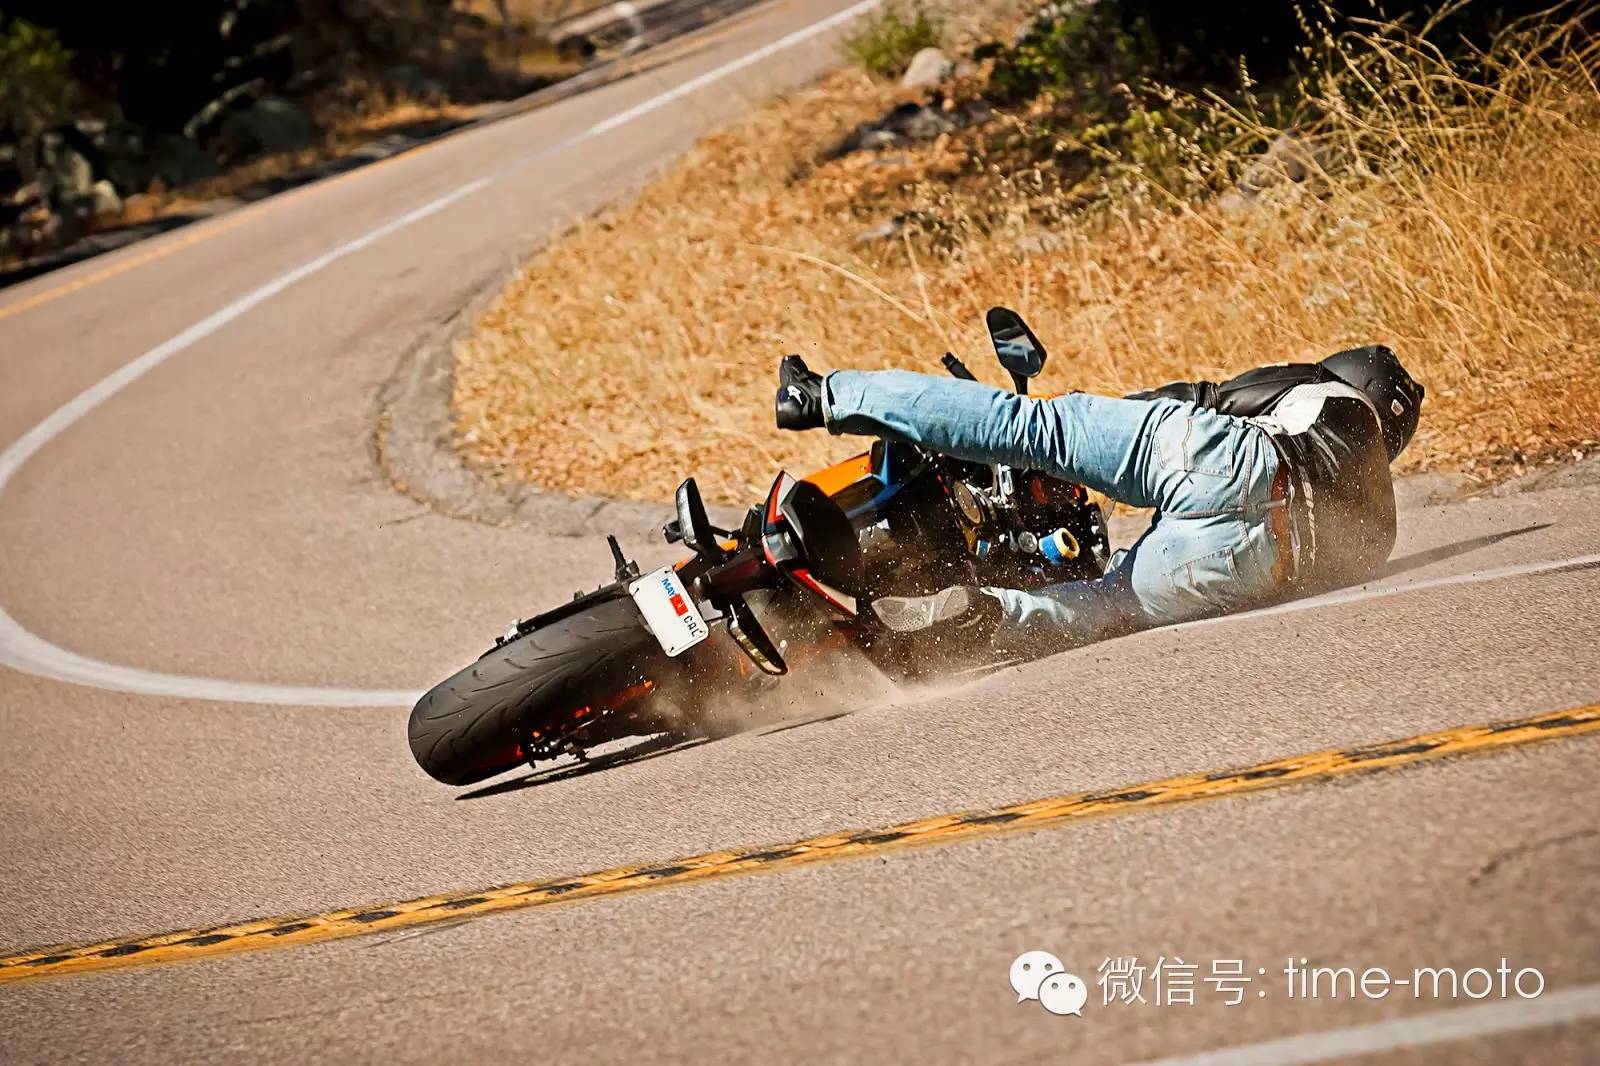 聊一聊摩托车装备的重要性